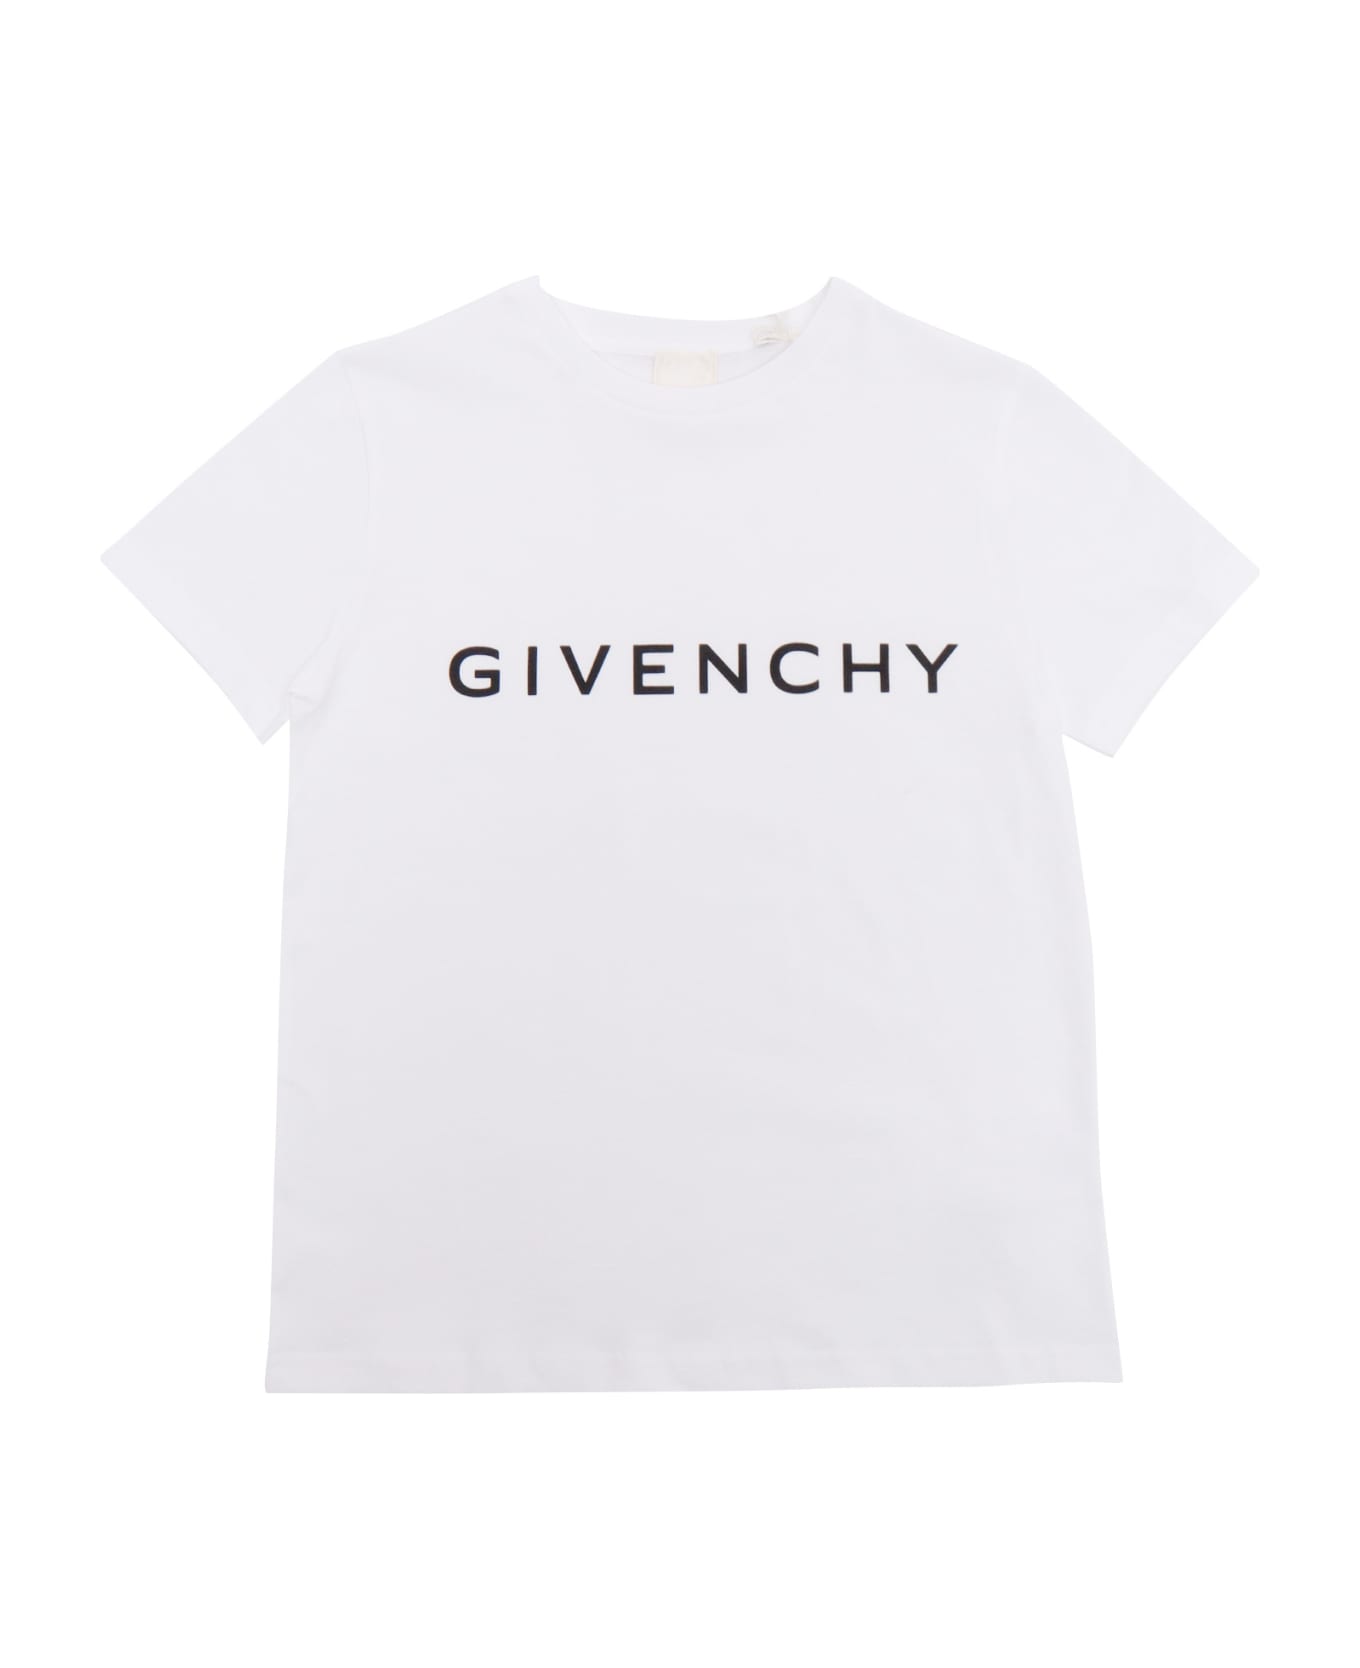 Givenchy Children's T-shirt - WHITE